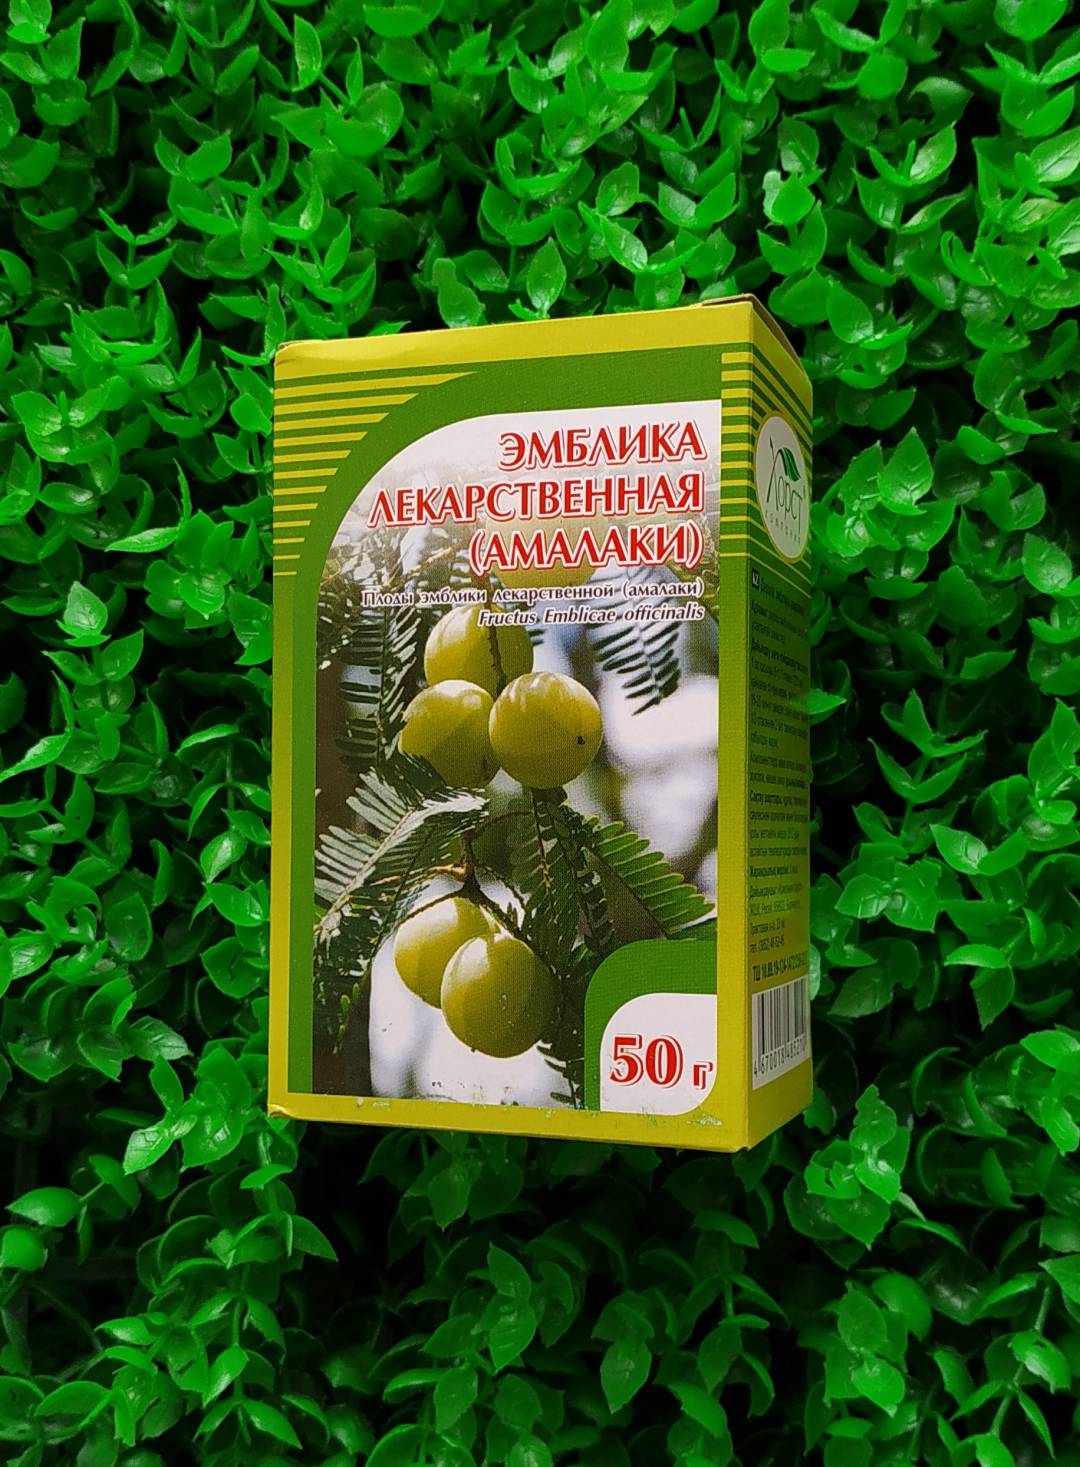 Купить онлайн Эмблика лекарственная (плоды Амалаки), 50 г в интернет-магазине Беришка с доставкой по Хабаровску и по России недорого.